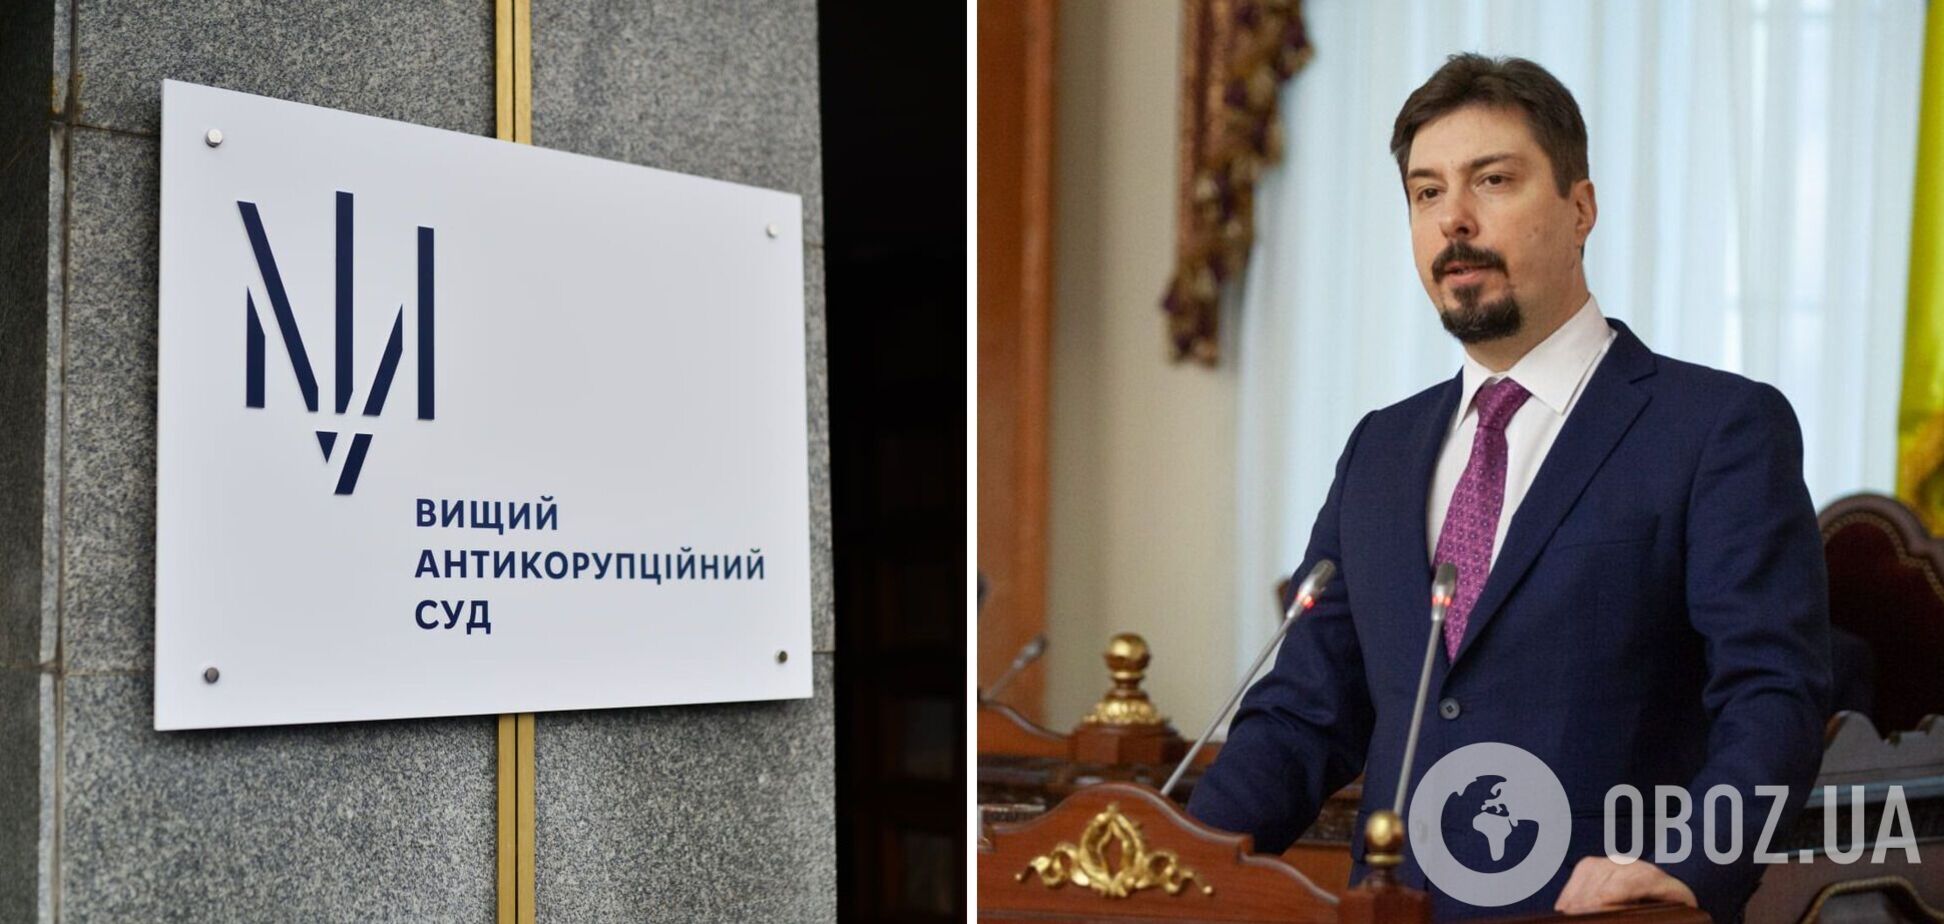 Экс-главе Верховного суда Князеву уменьшили размер залога до 55 млн грн: все детали дела